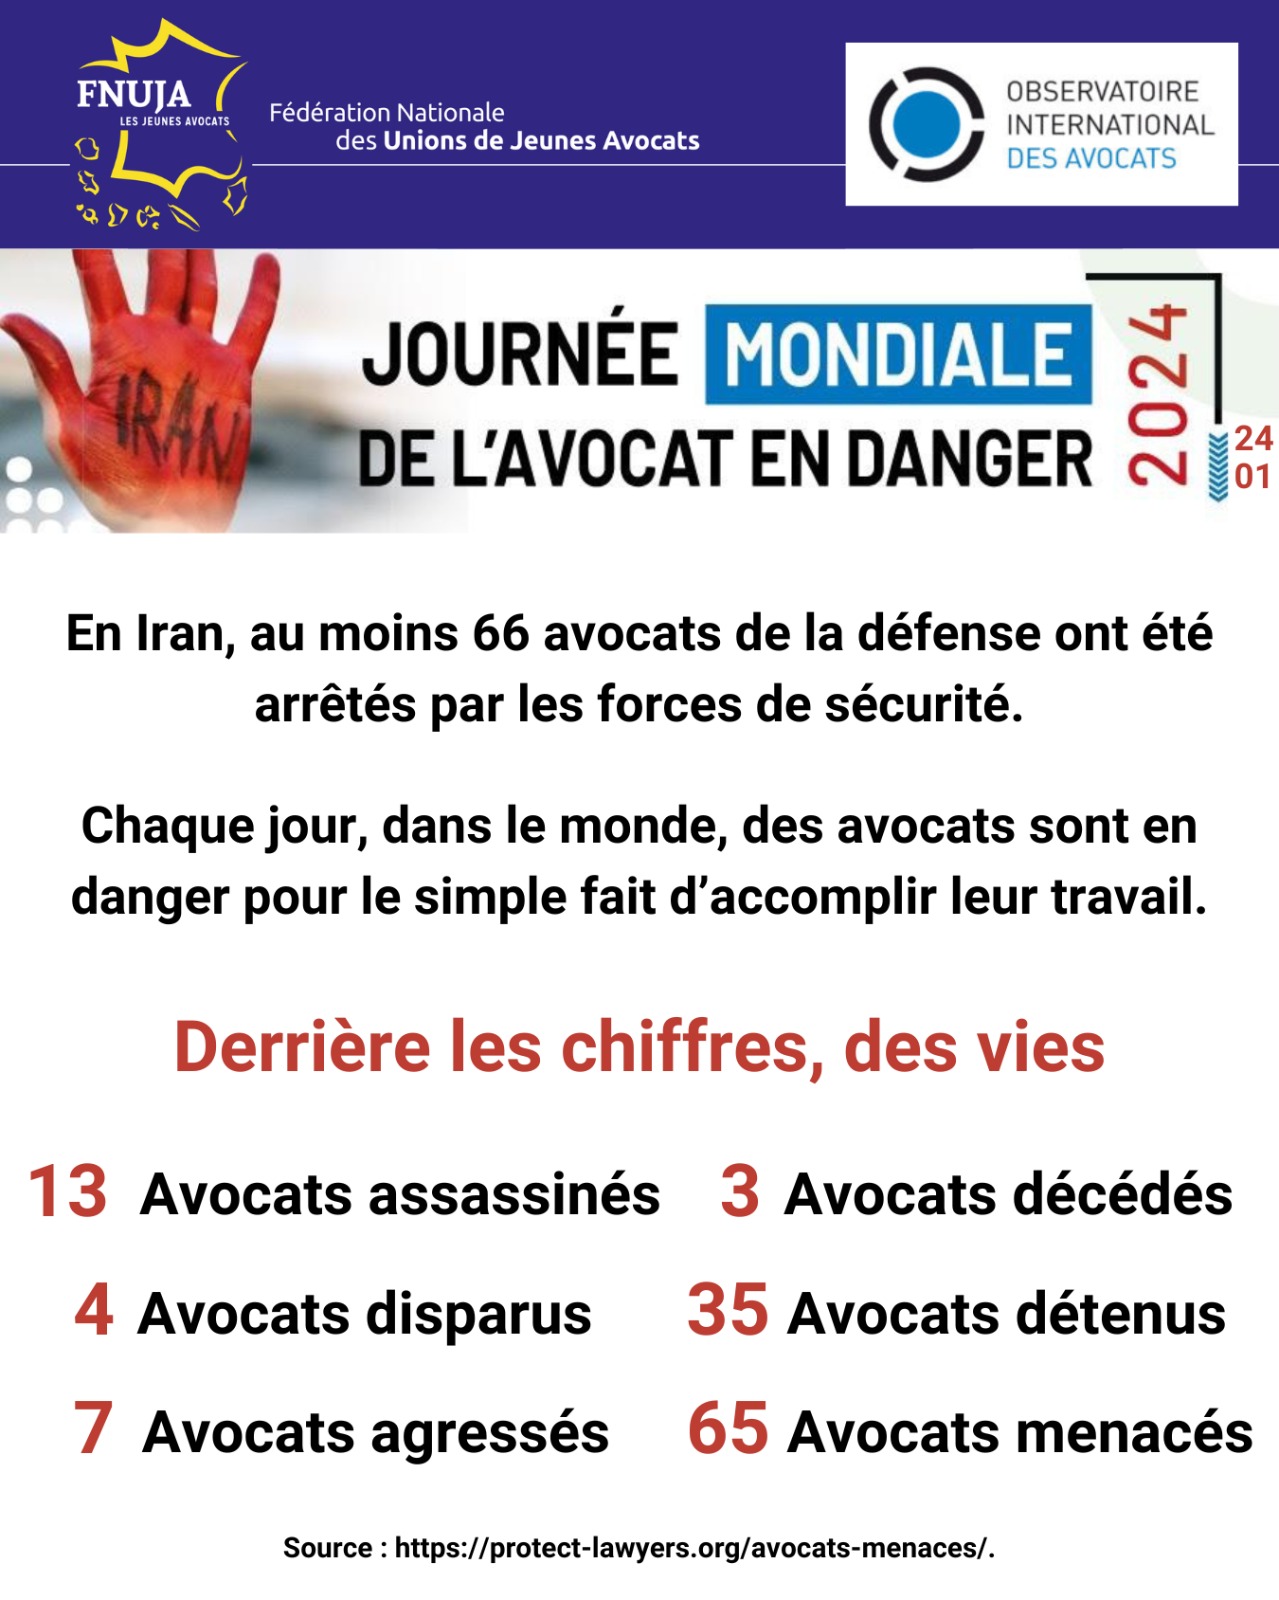 24 JANVIER, JOURNÉE DE L'AVOCAT EN DANGER